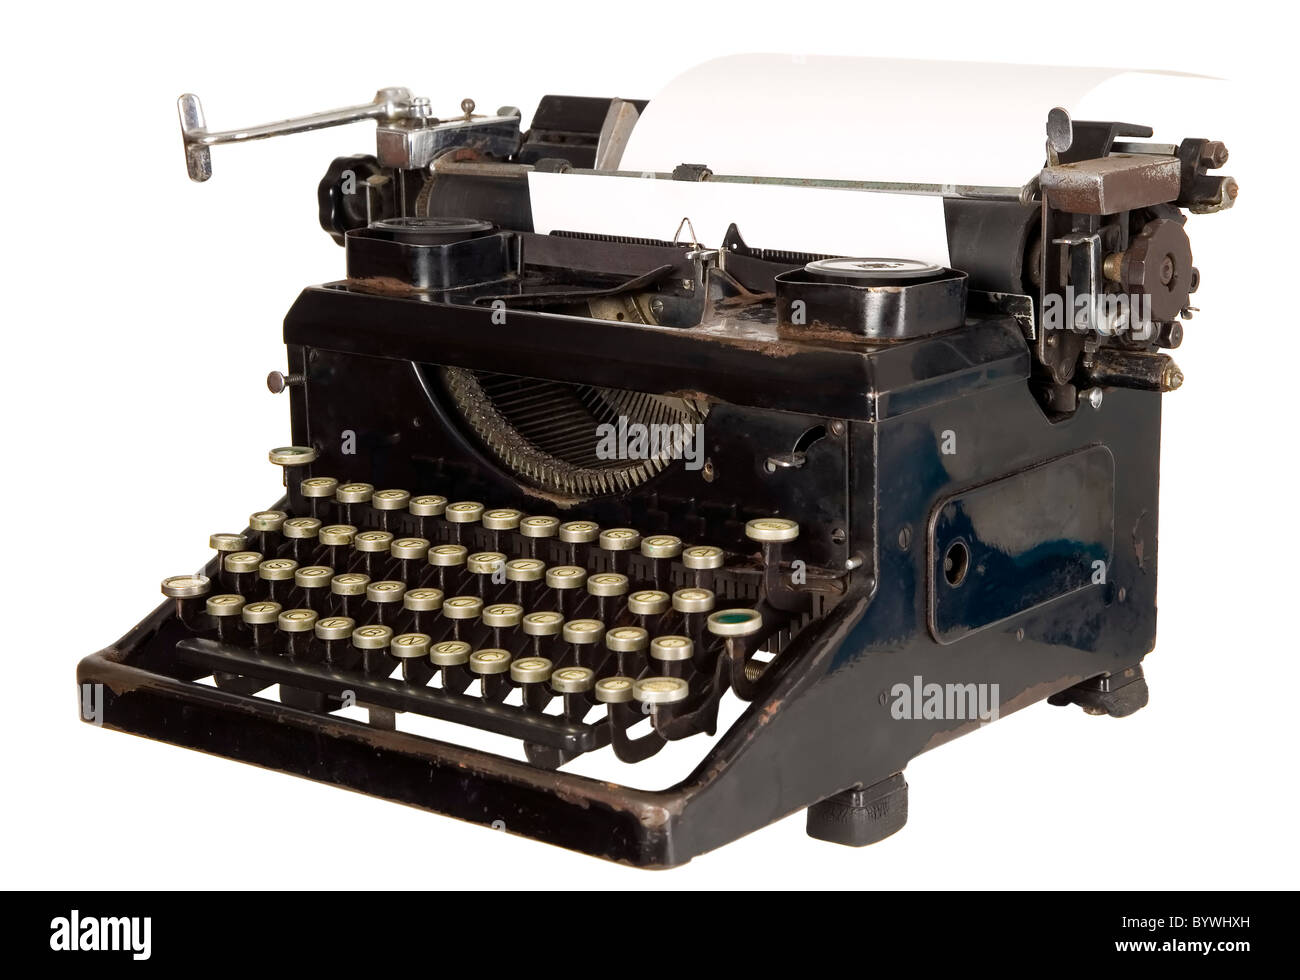 Alte antike weiße Schreibmaschine mit schwarzen Tasten Stockfoto